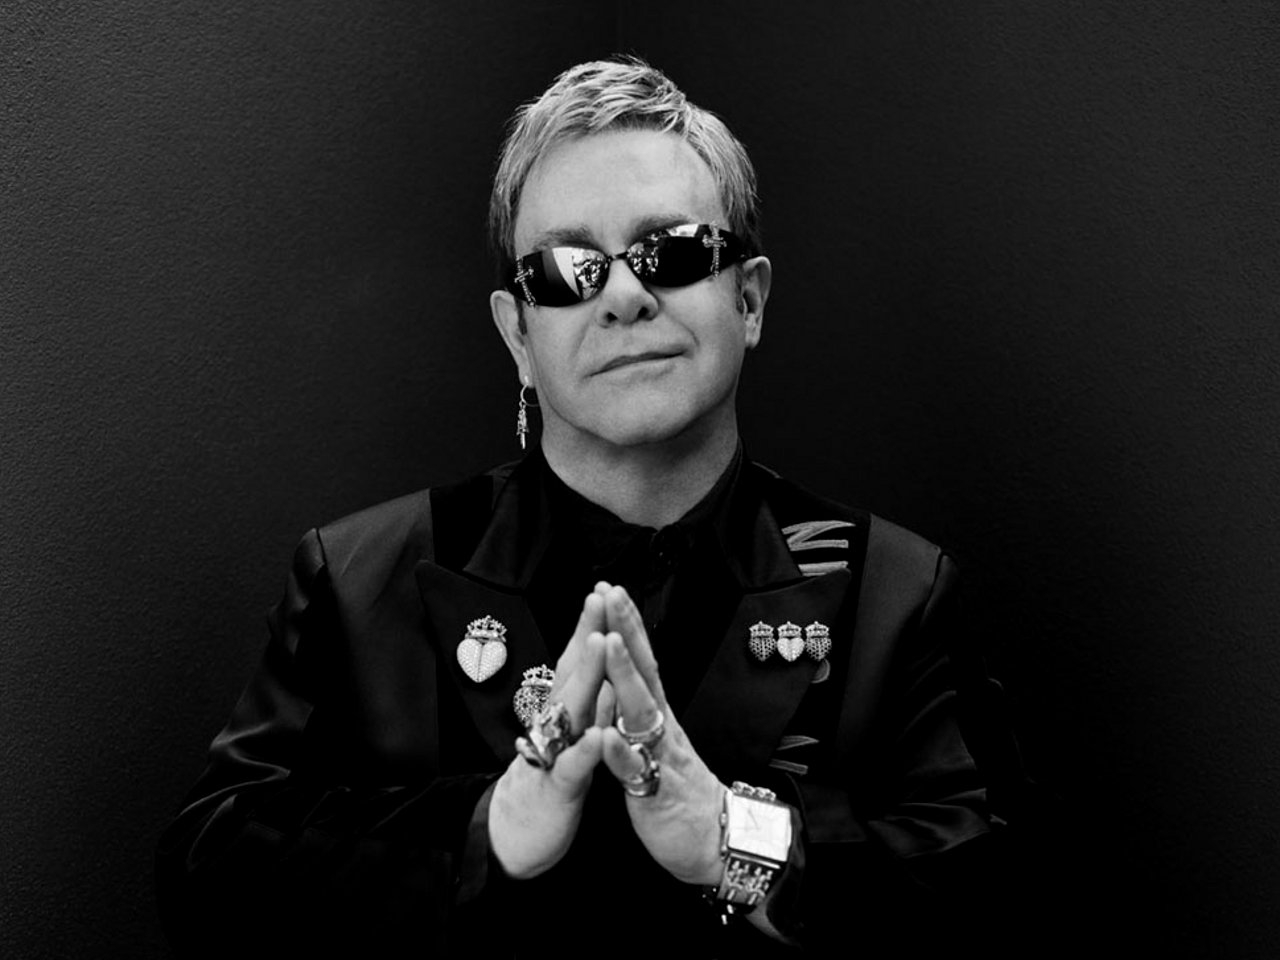 Ngắm bộ sưu tập ảnh của Elton John